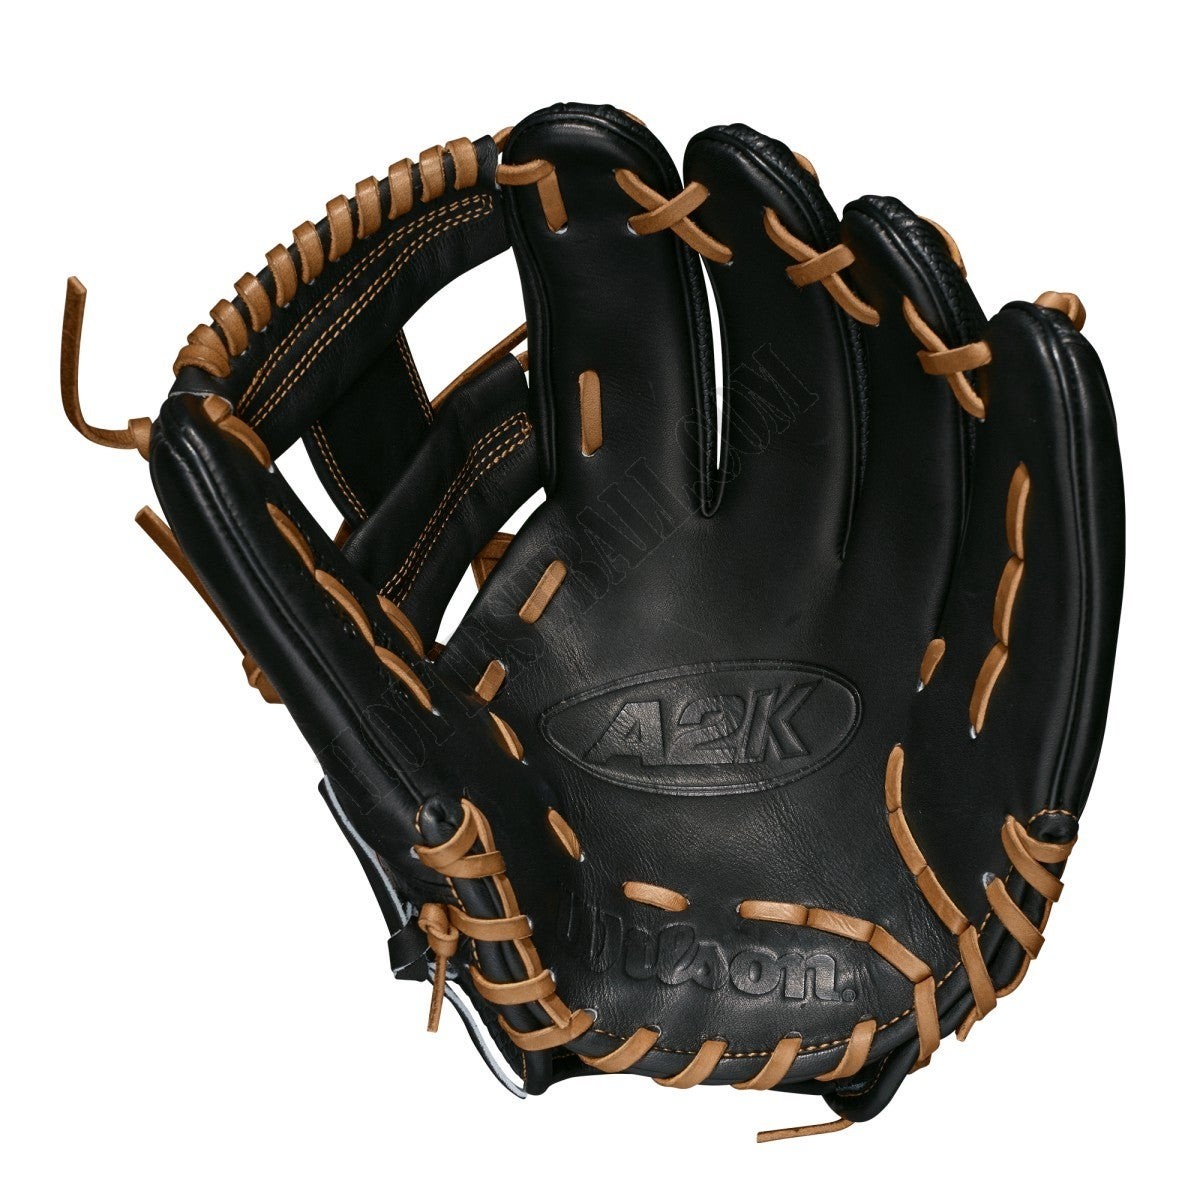 2021 A2K 1786SS 11.5" Infield Baseball Glove ● Wilson Promotions - -2